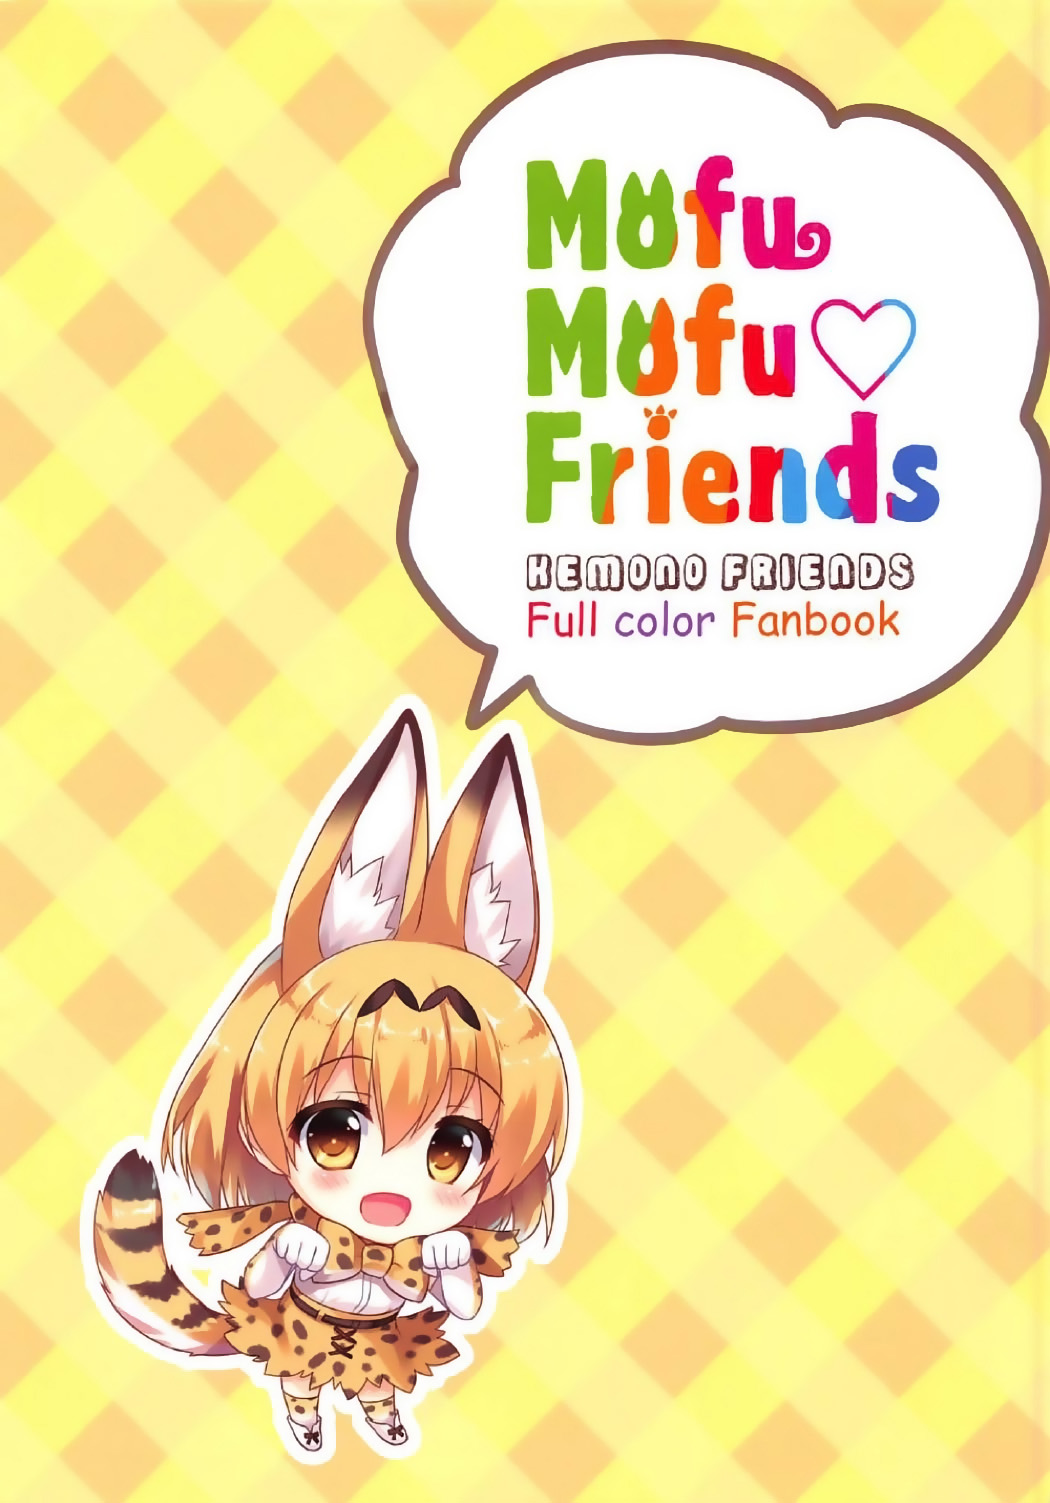 (ジャパリケット) [あめ のち ゆき (あめとゆき)] Mofu Mofu Friends (けものフレンズ) [英訳]